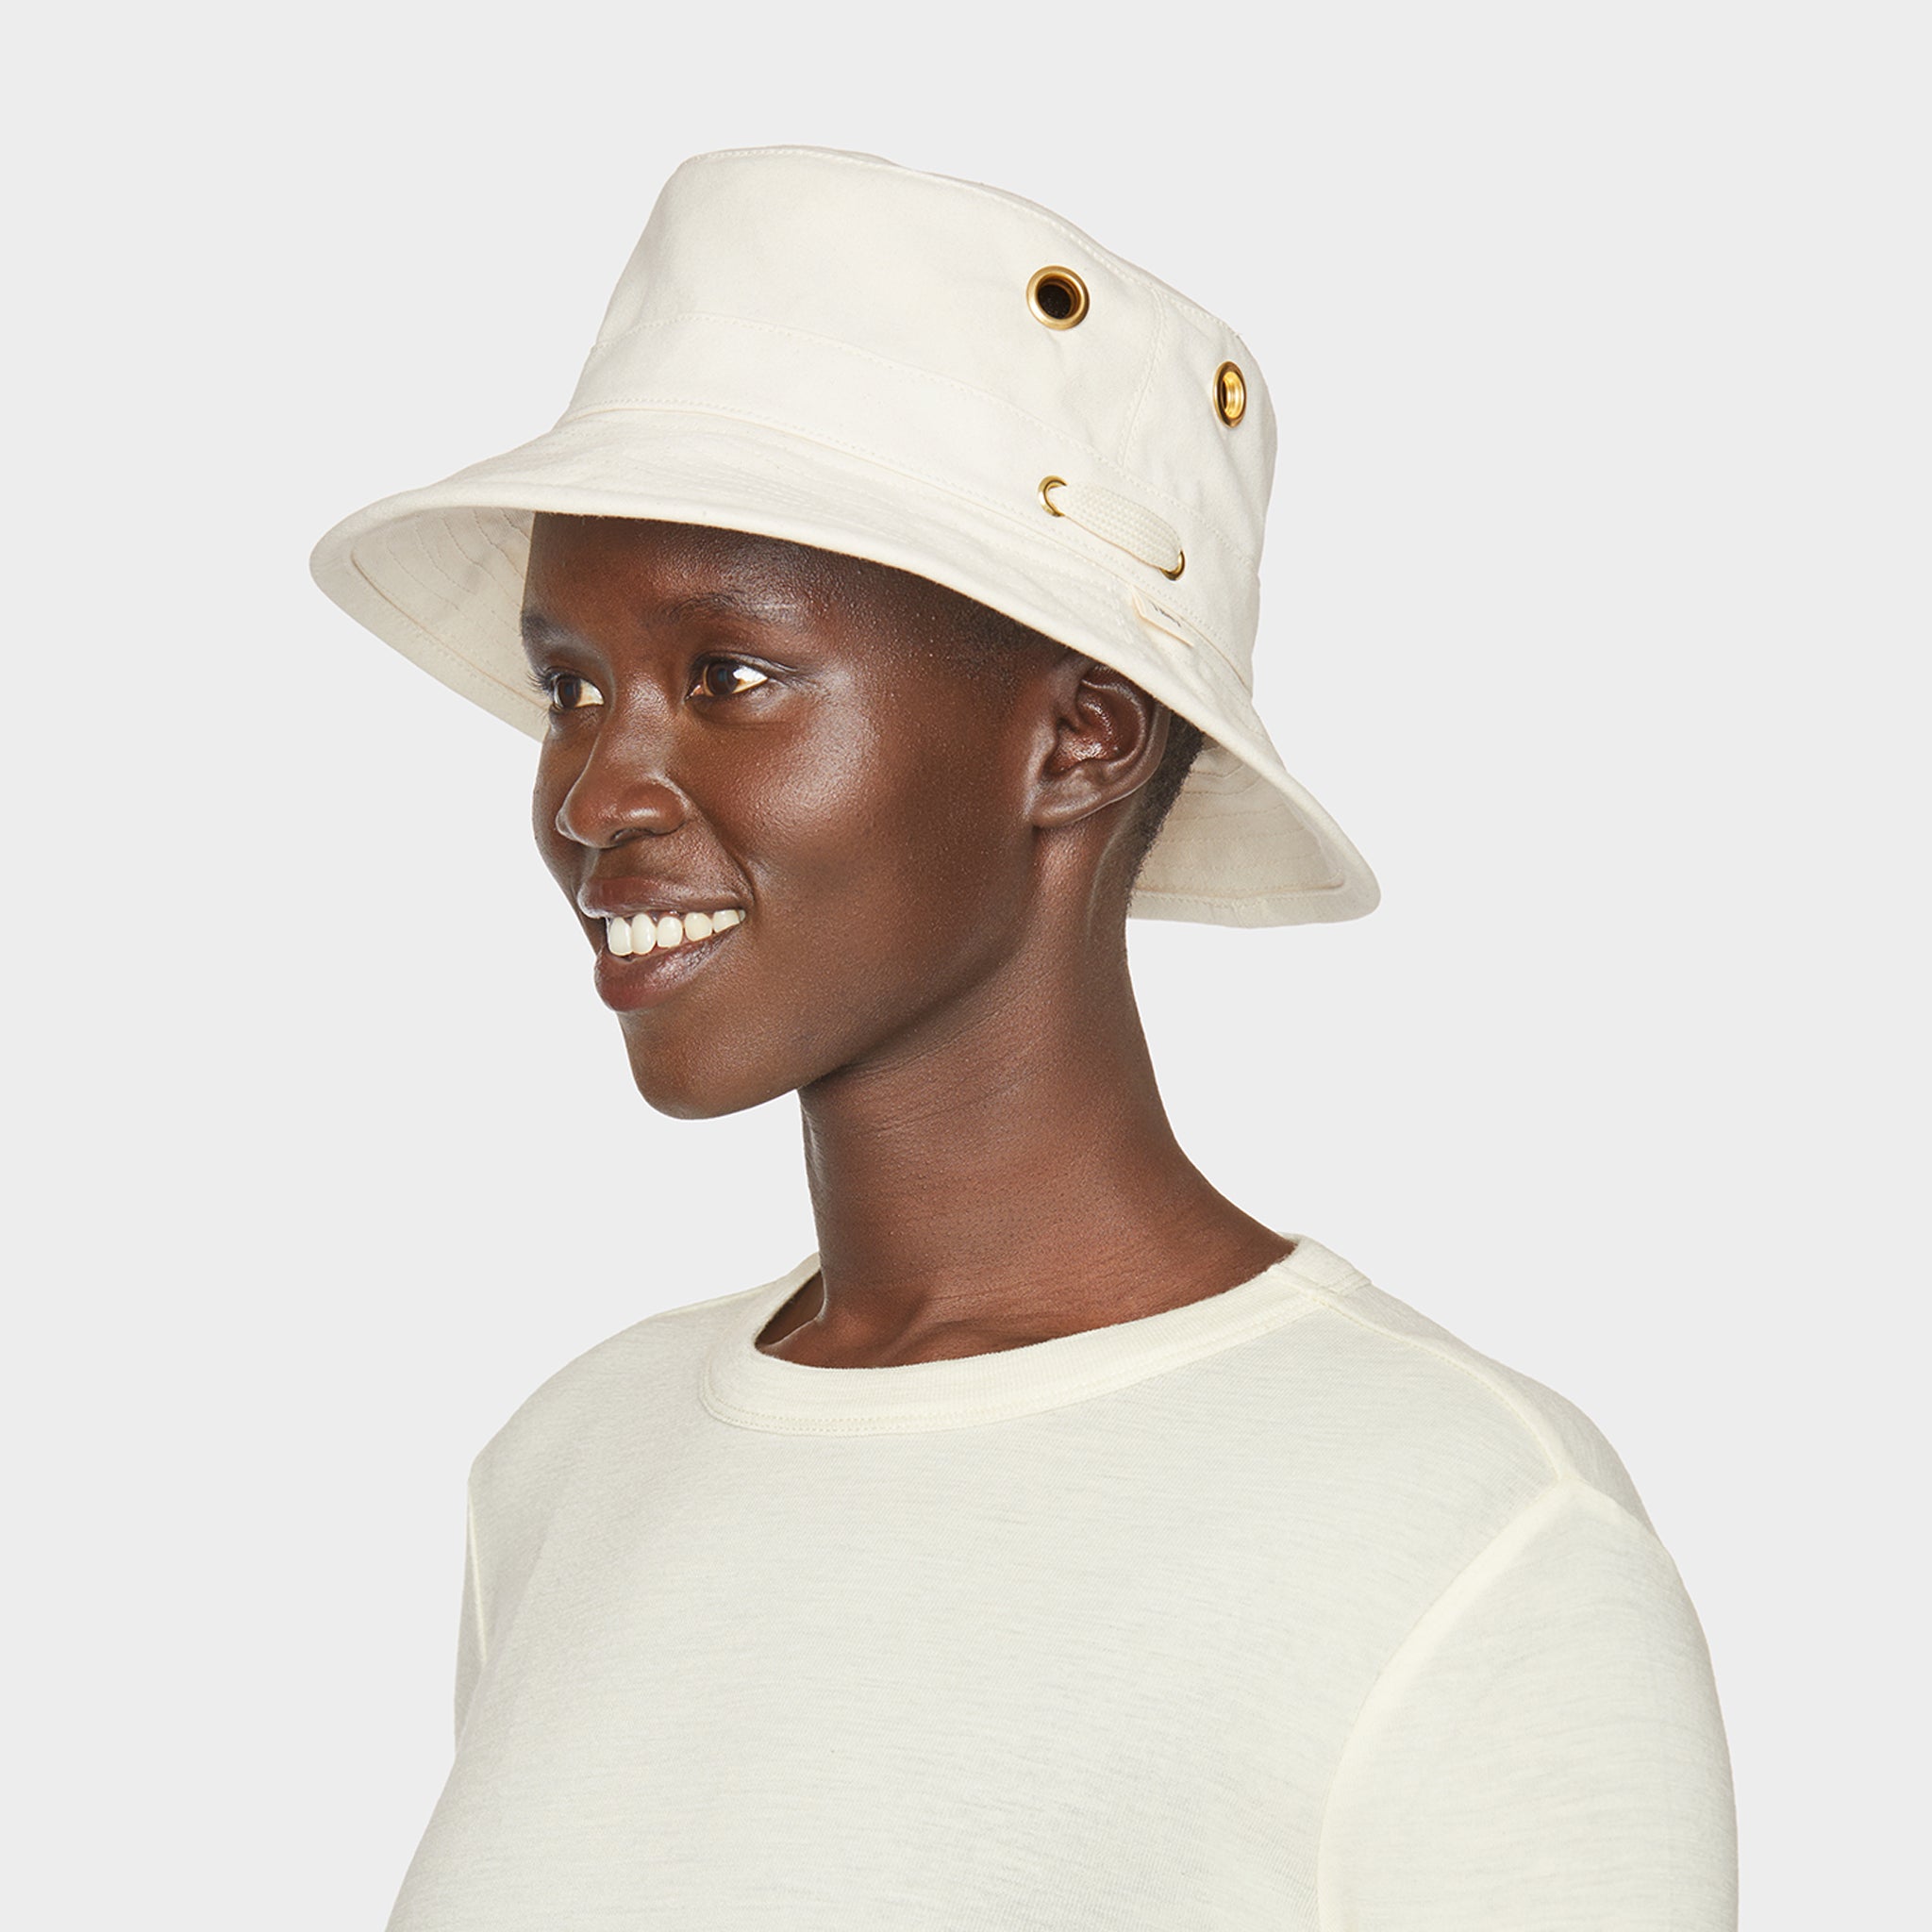 Bucket Hats and Boonies - Bucket Hats for Men, Women and Kids